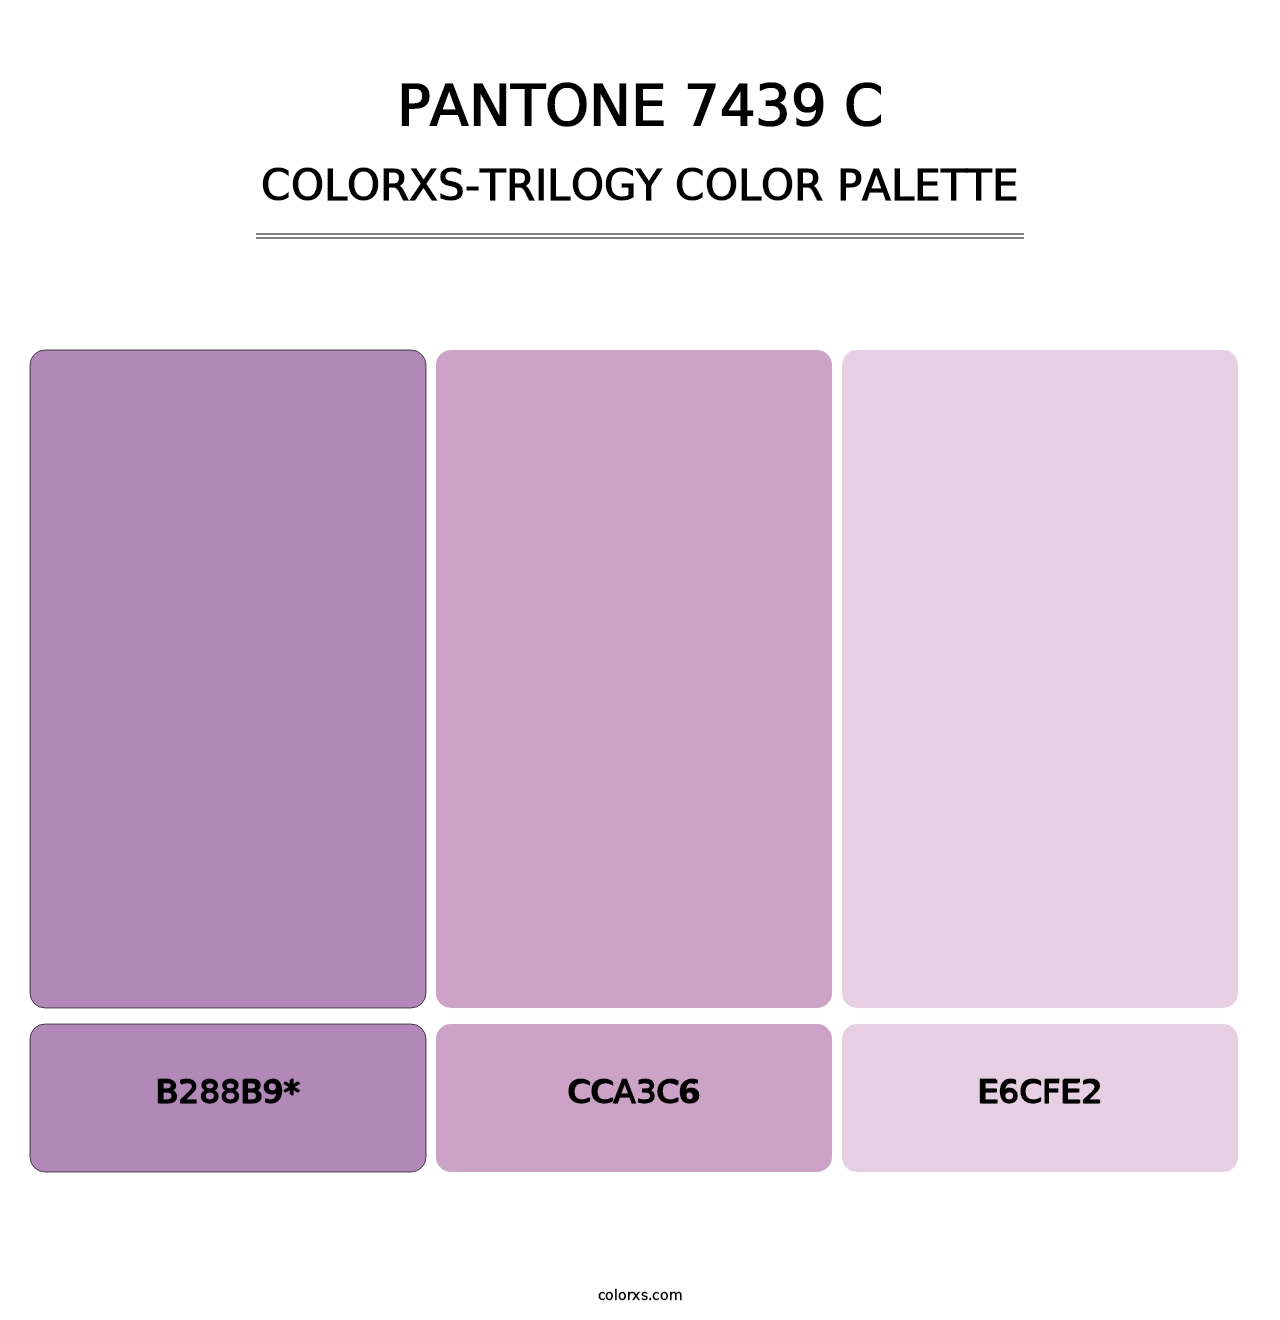 PANTONE 7439 C - Colorxs Trilogy Palette